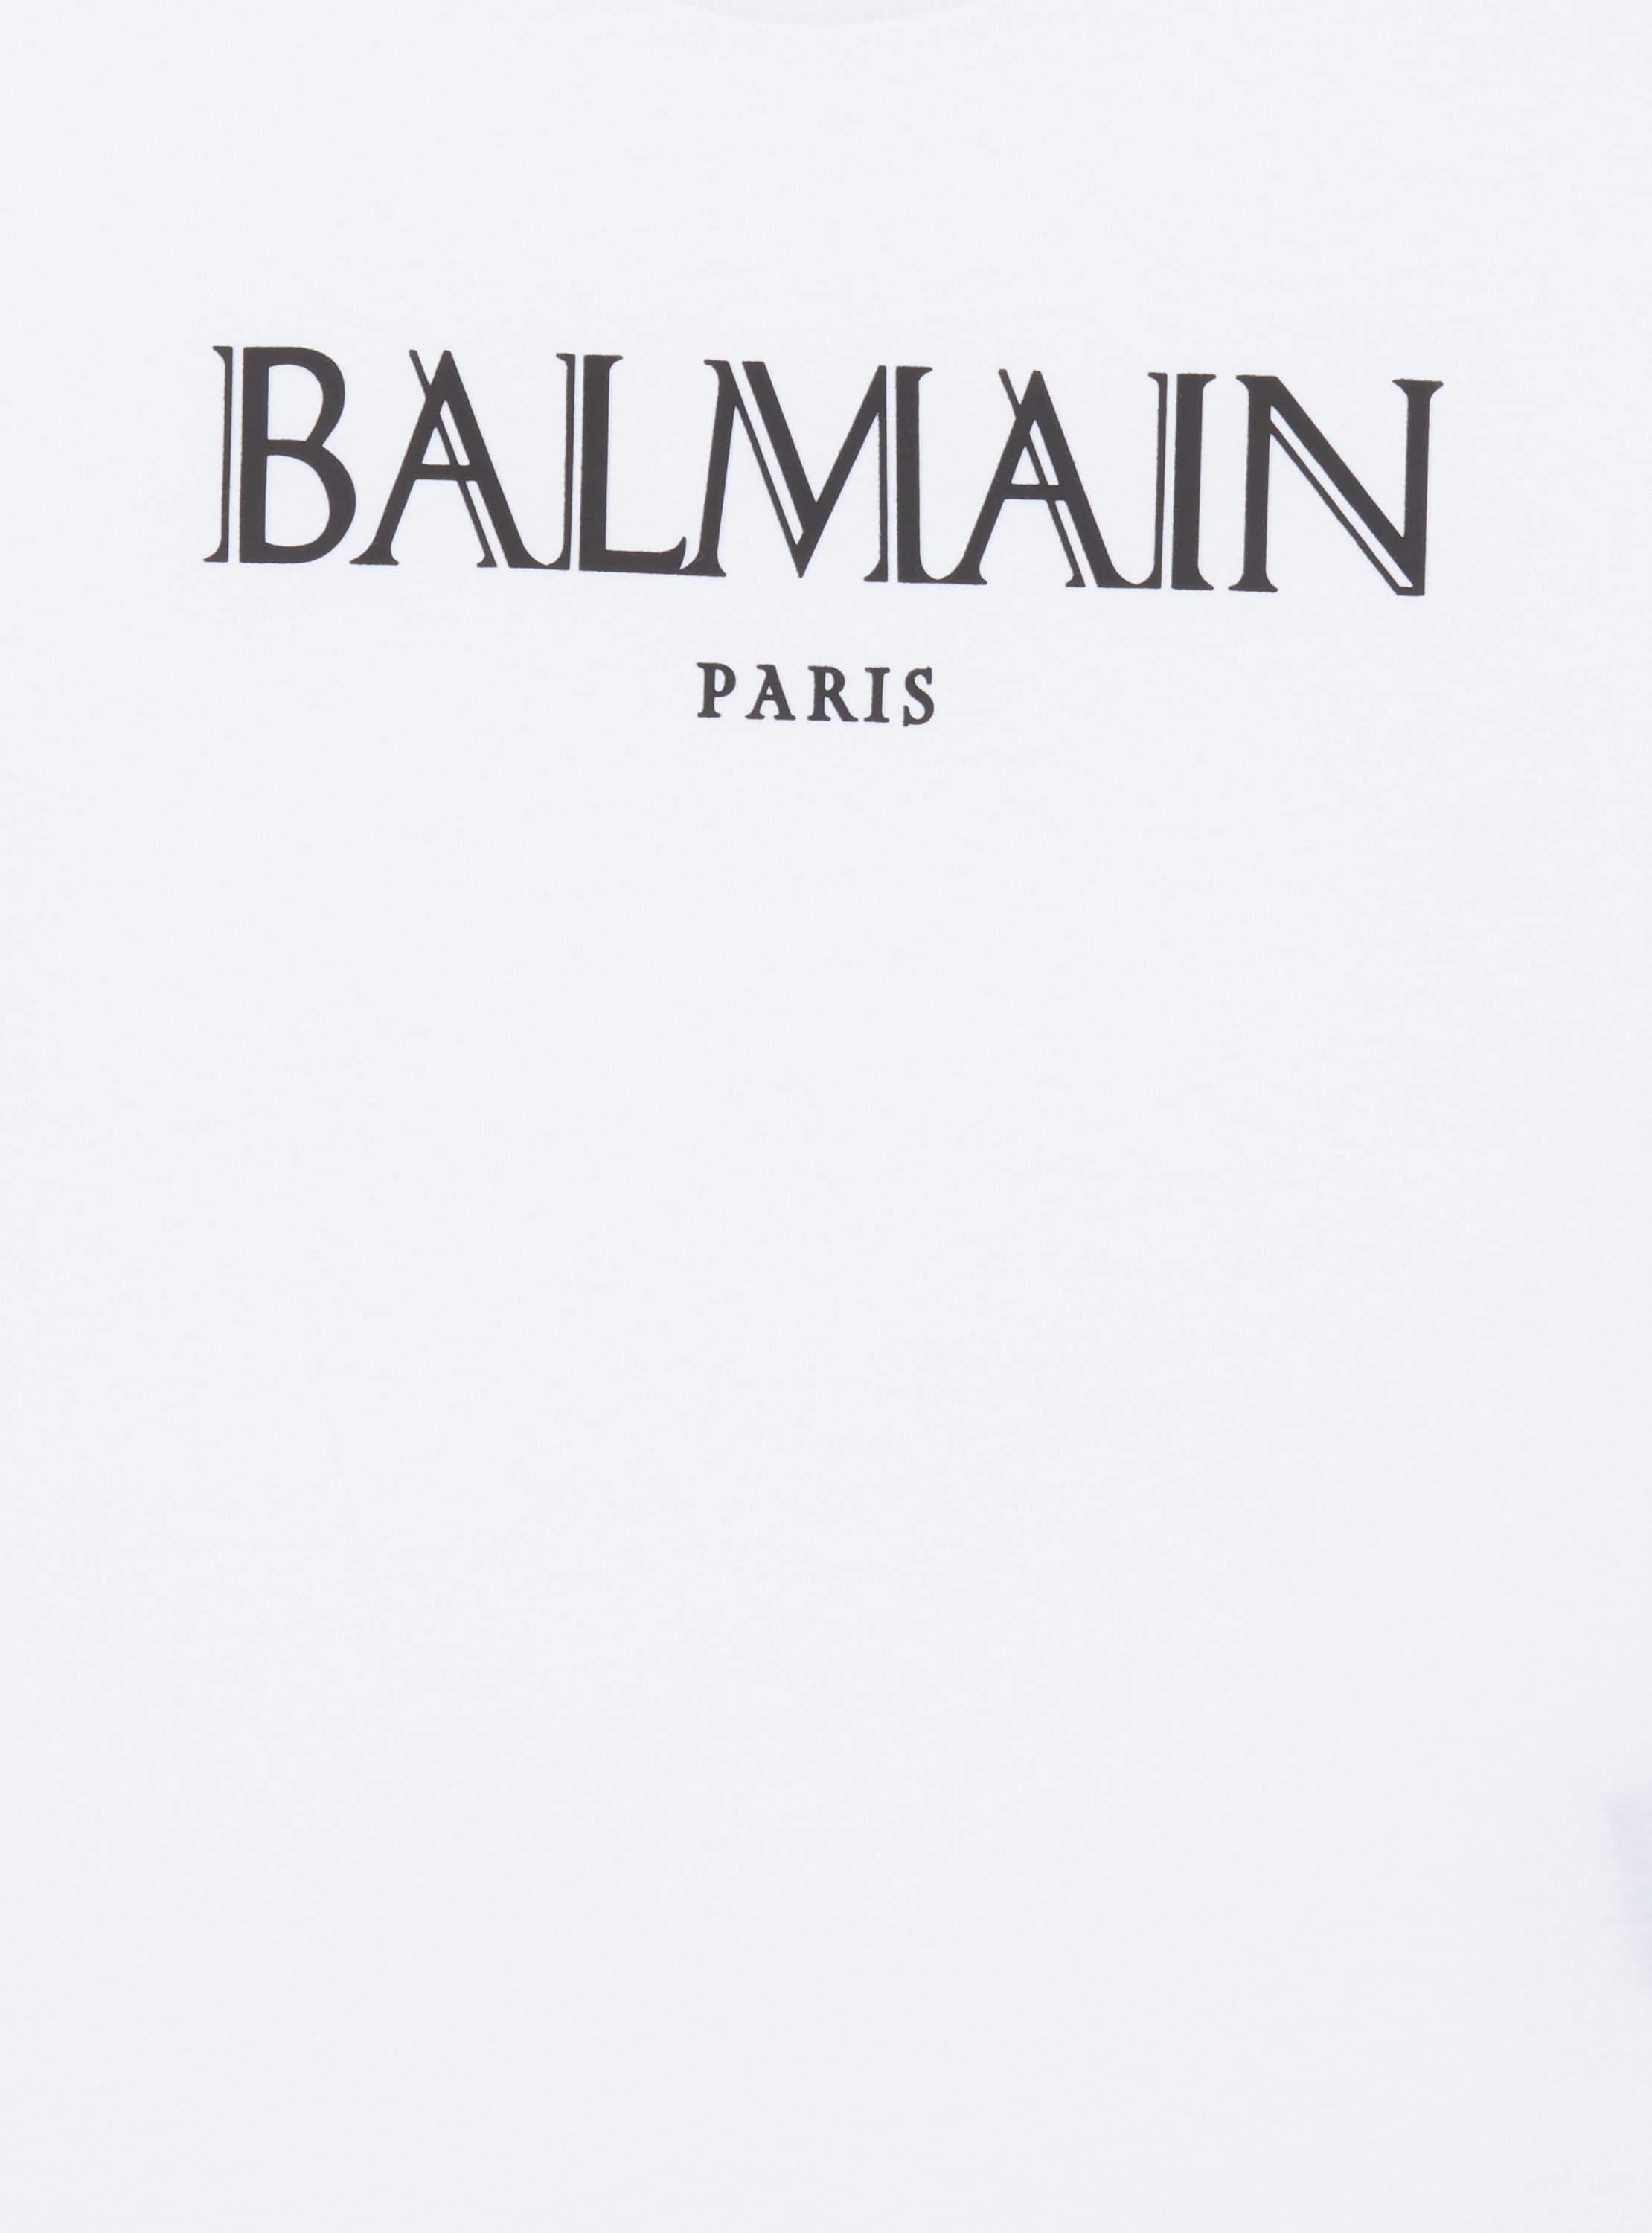 Balmain Romain Tシャツ